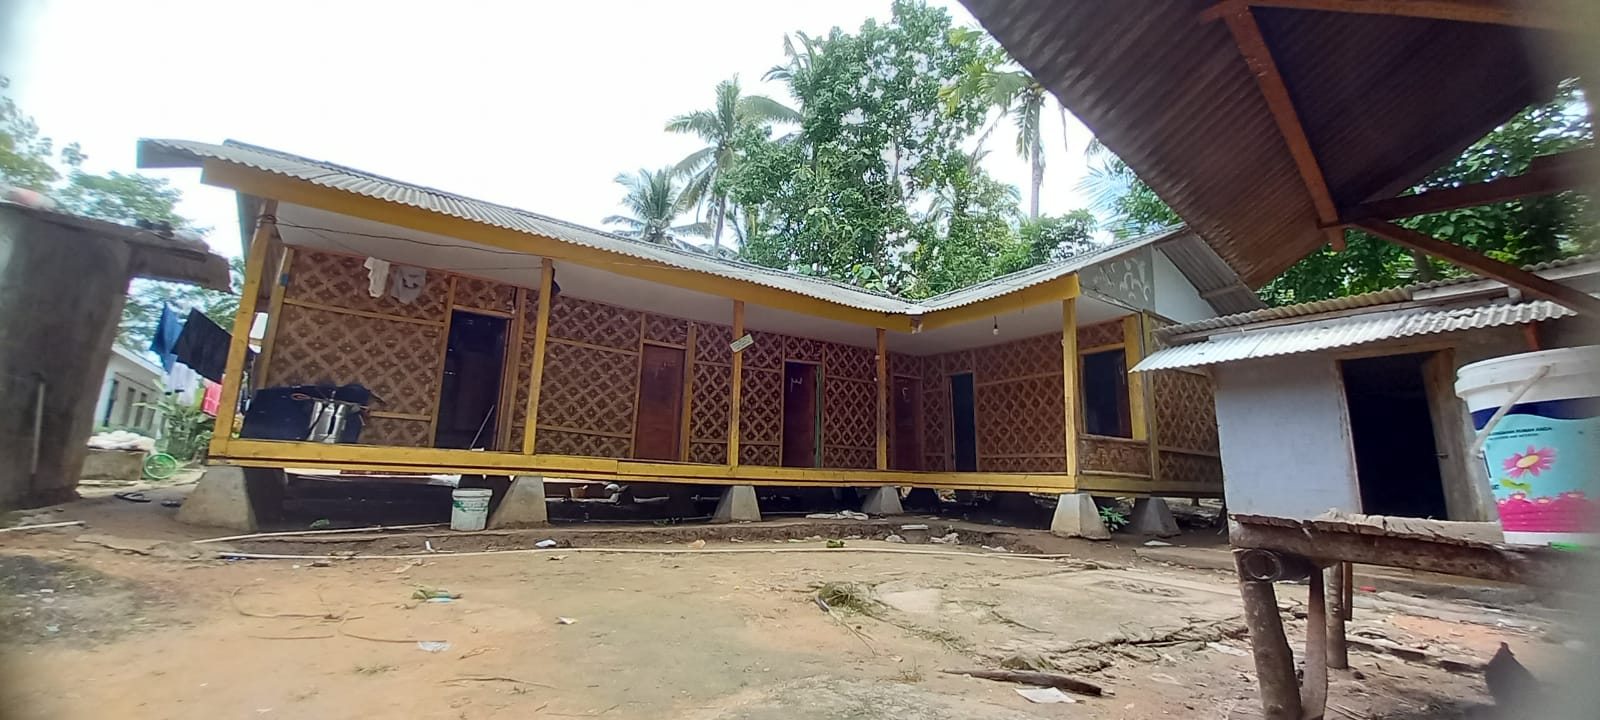 Usulan Lokasi Sedekah Air untuk Ponpes Jam'yyatul Mubtadi di Kampung Cipunaga, Desa Cihara, Kecamatan Cihara, Lebak, Banten